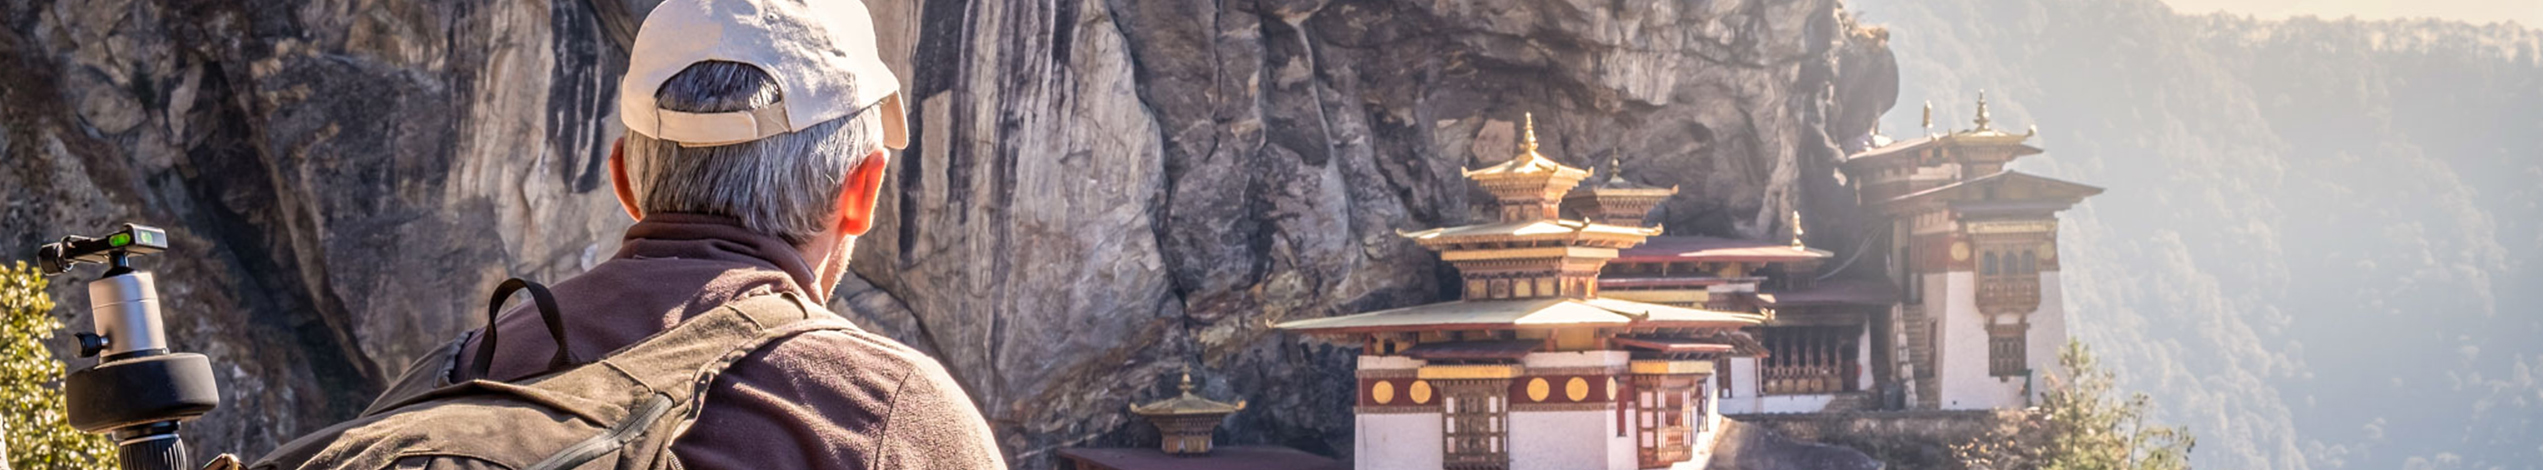 Tag med Jysk Rejsebureau på vandring i Bhutan